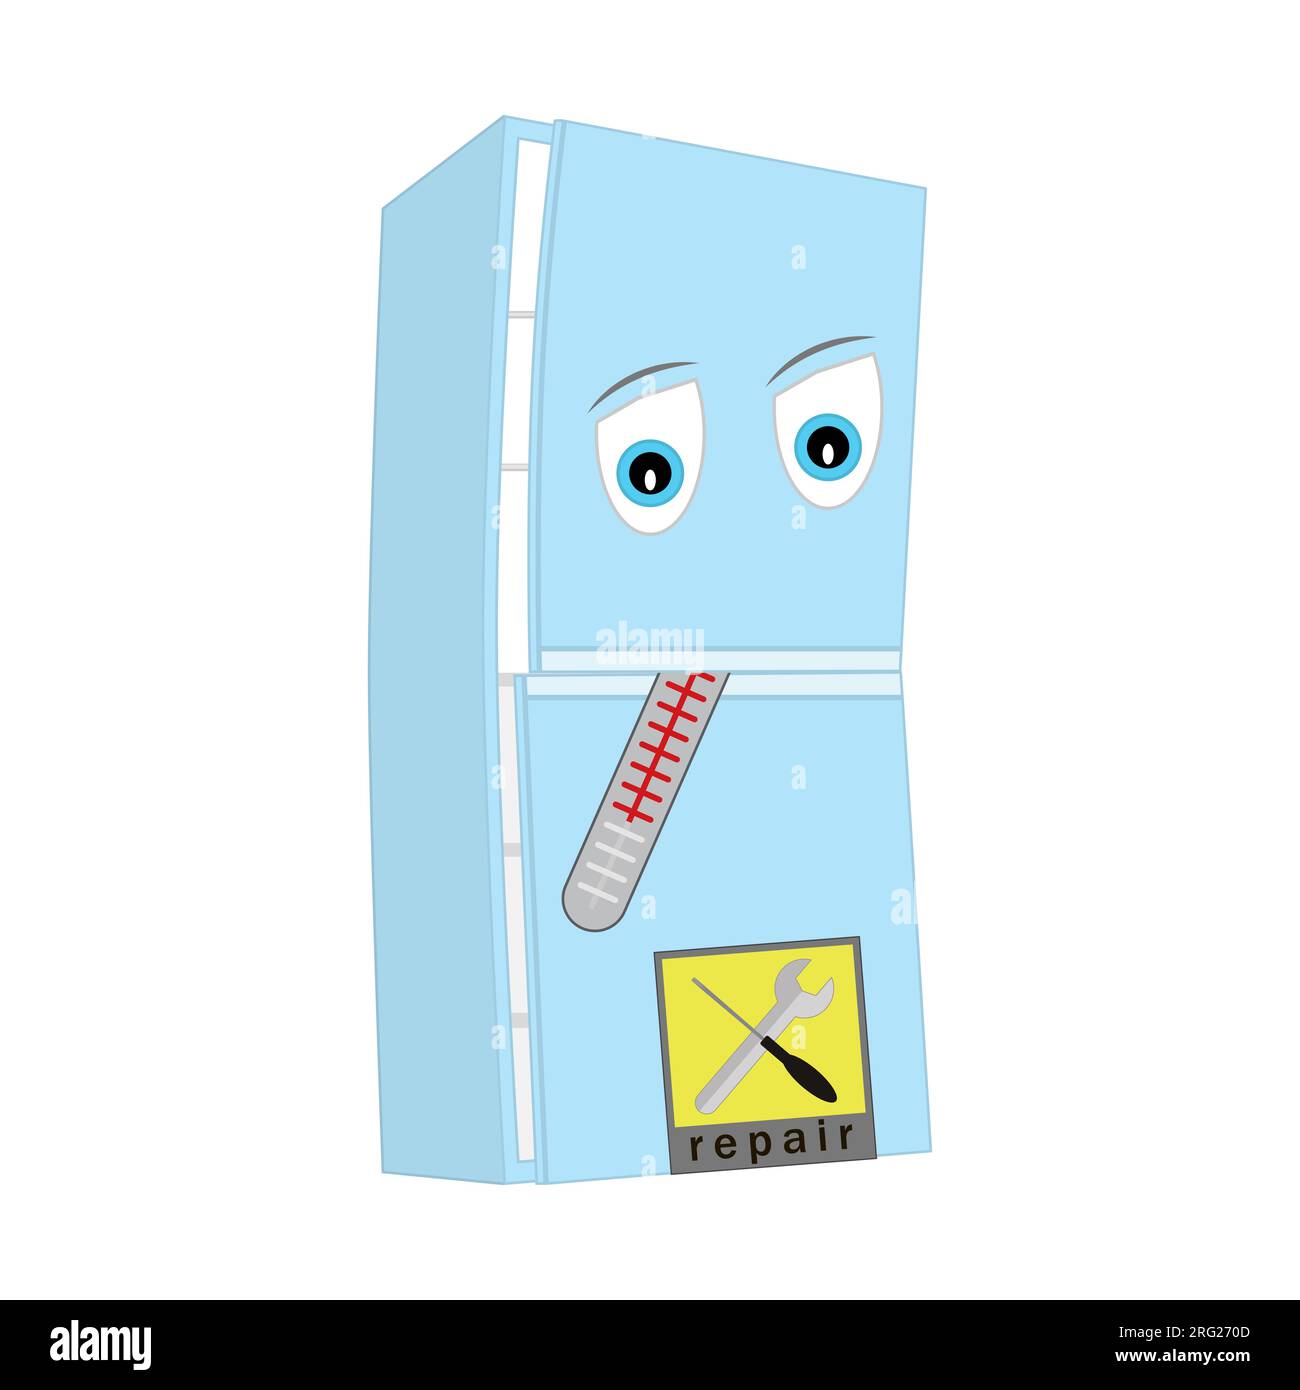 Ein kaputter Kühlschrank, der repariert werden muss. Mit einem Thermometer im Mund. Schild mit Textreparatur. Zeichentrickfigur auf weißem Hintergrund. Stock Vektor